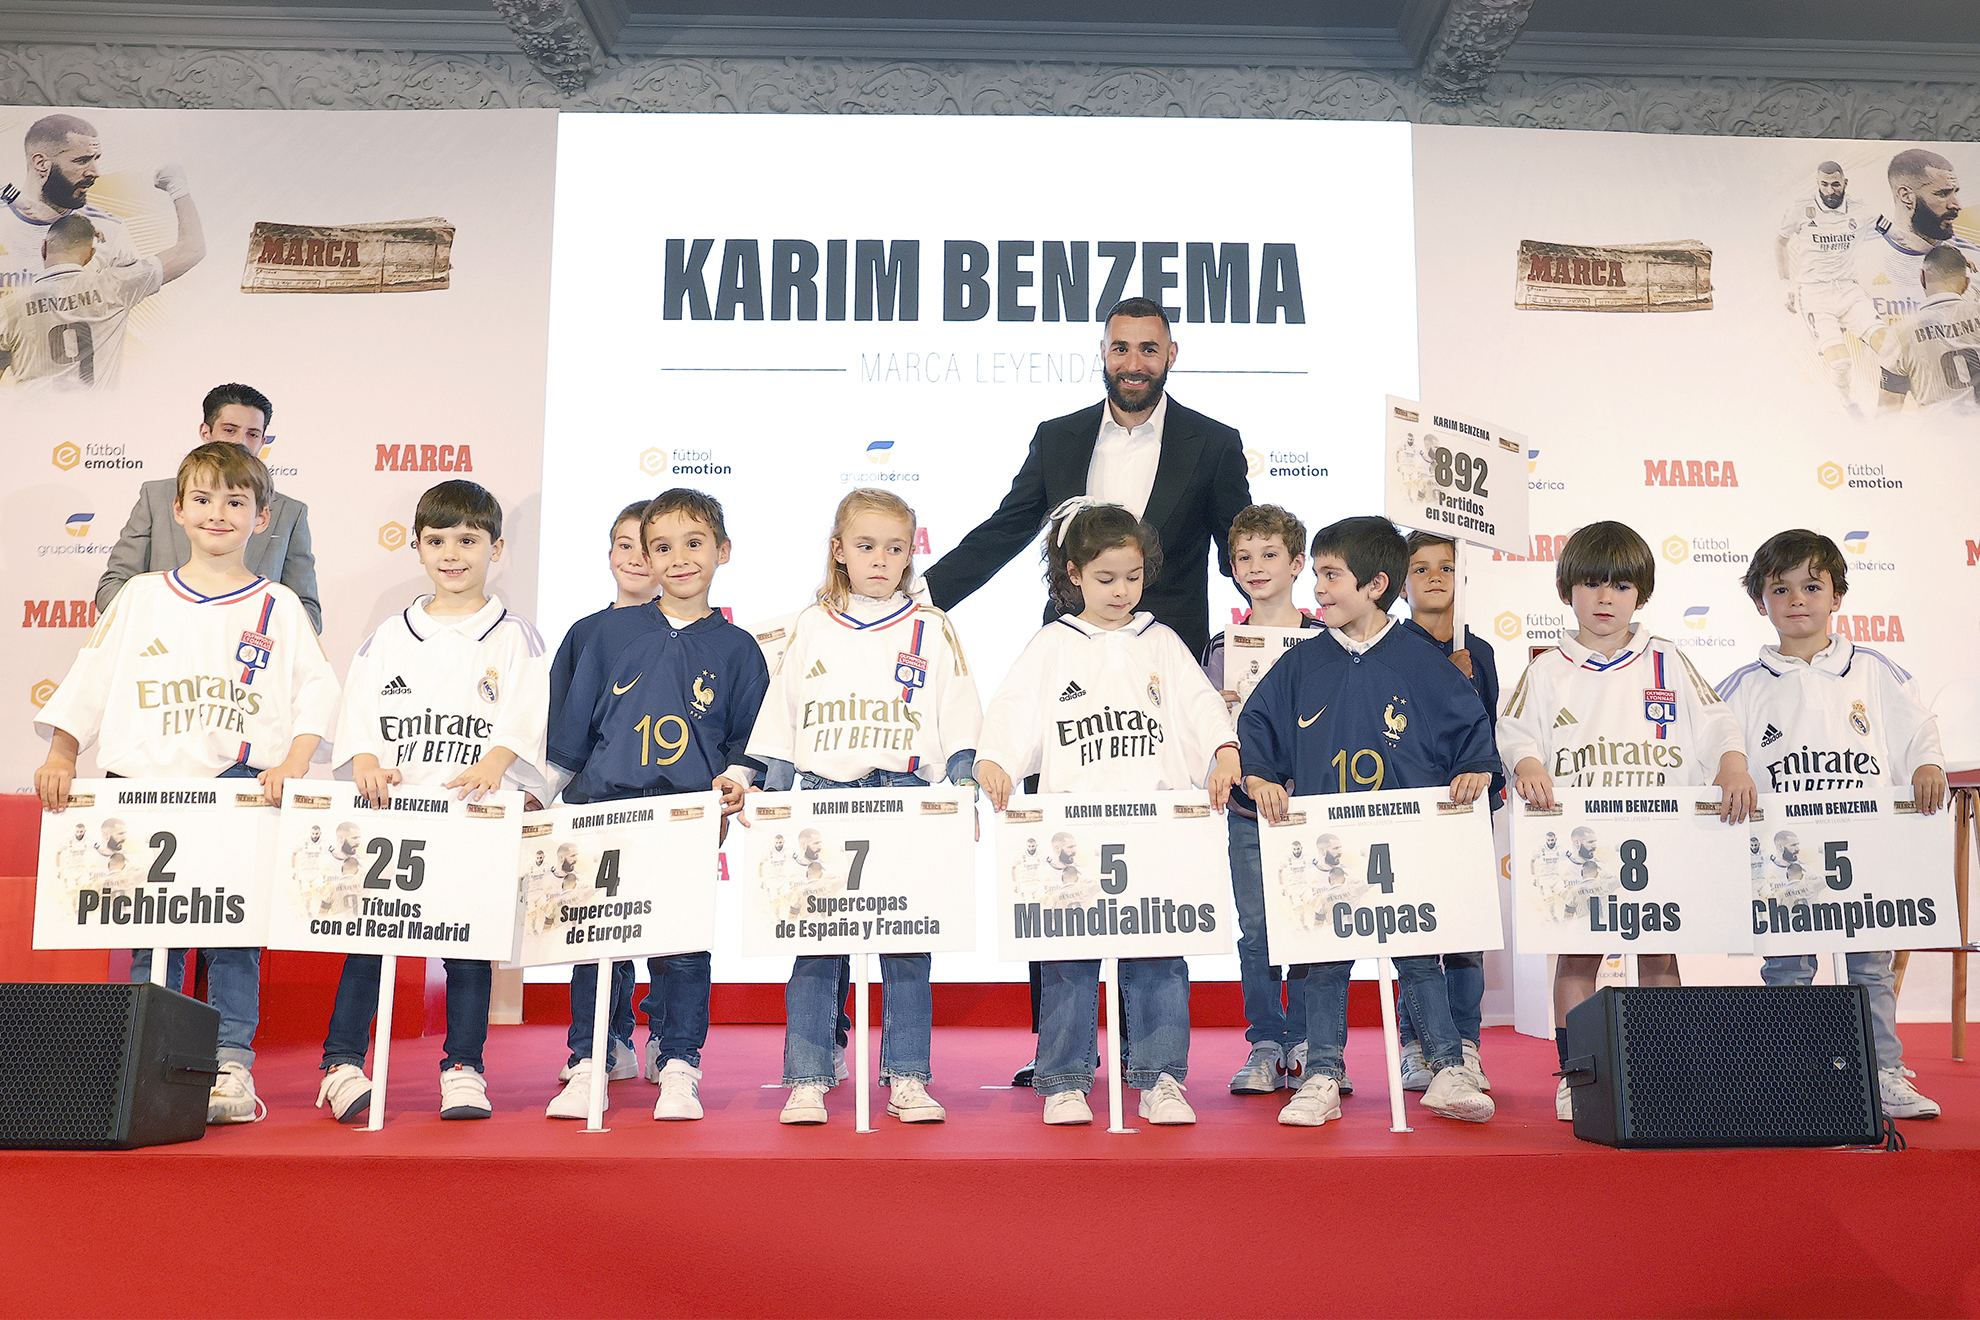 Karim Benzema posa junto a 10 ni�os durante la entrega del MARCA Leyenda ayer en Madrid.